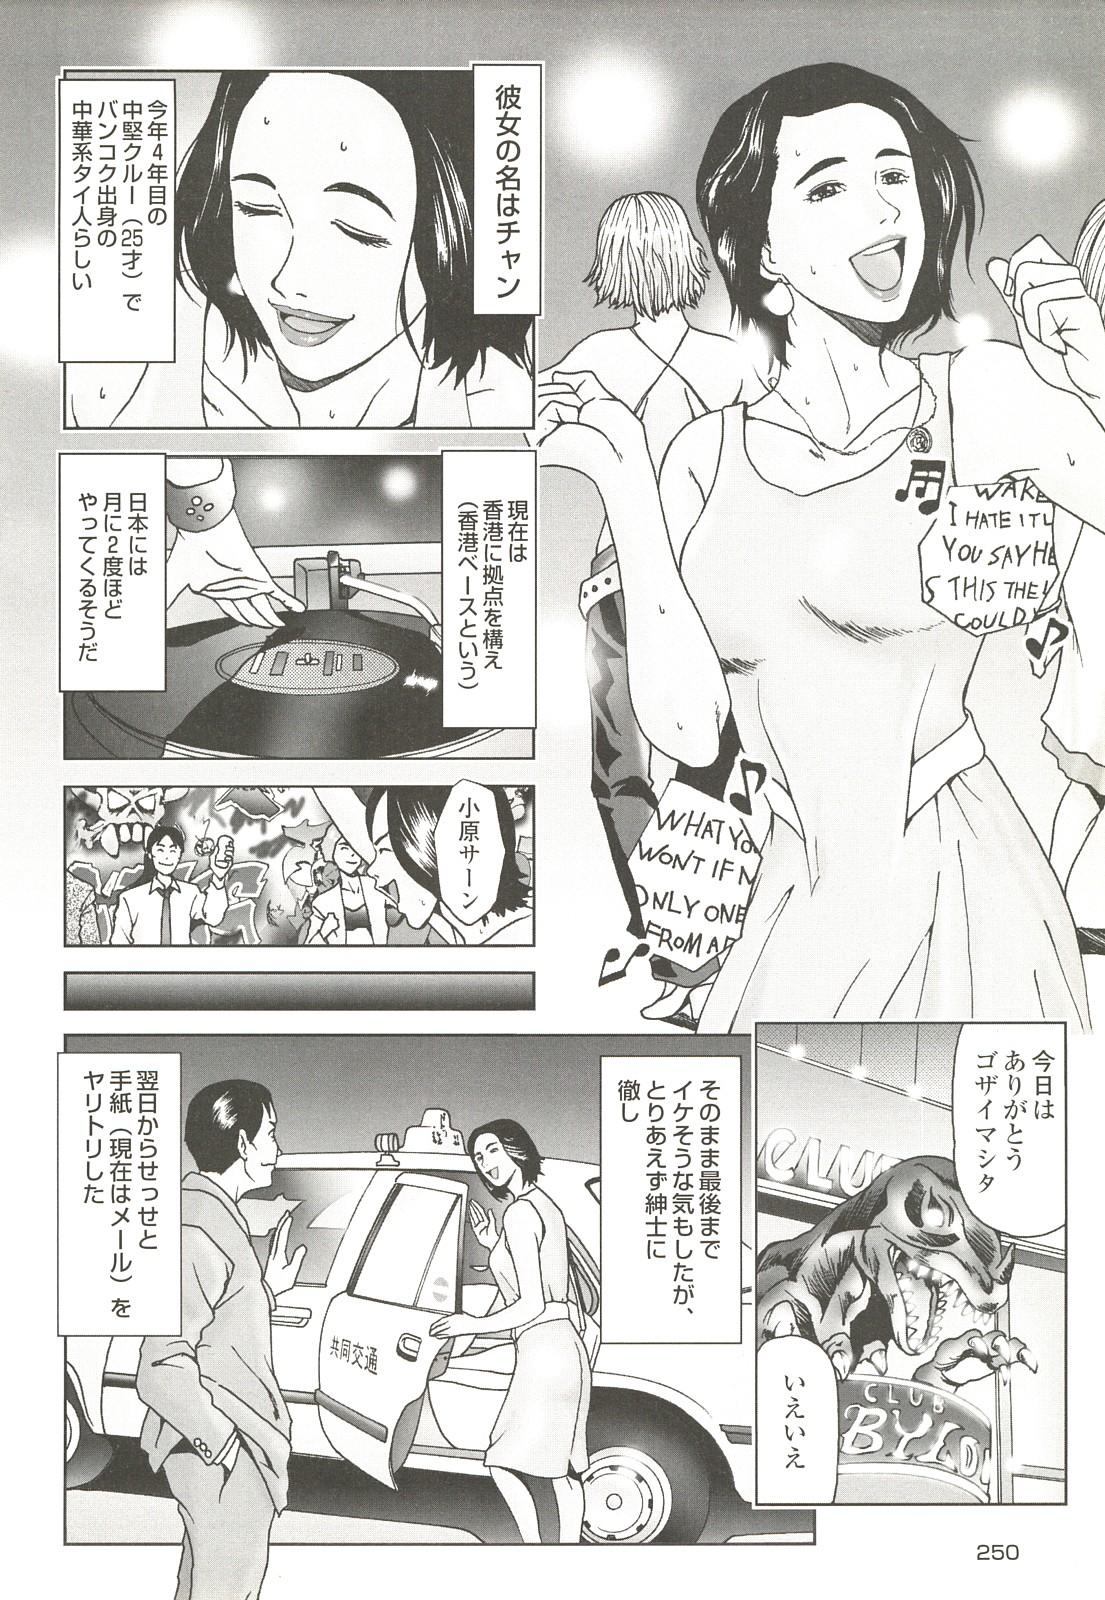 コミック裏モノJAPAN Vol.18 今井のりたつスペシャル号 249